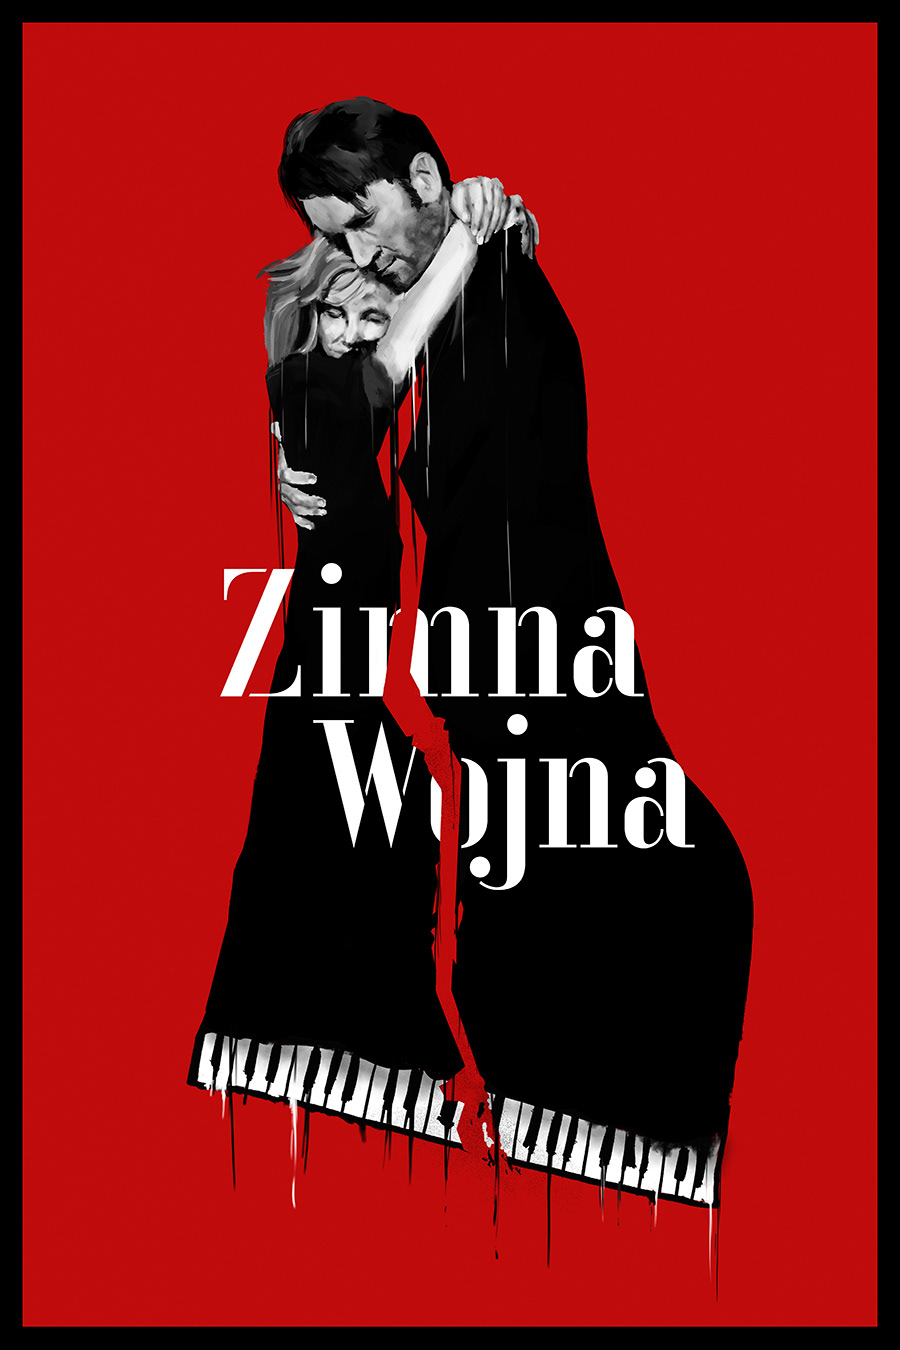 Zimna Wojna (DVD) - No English Version